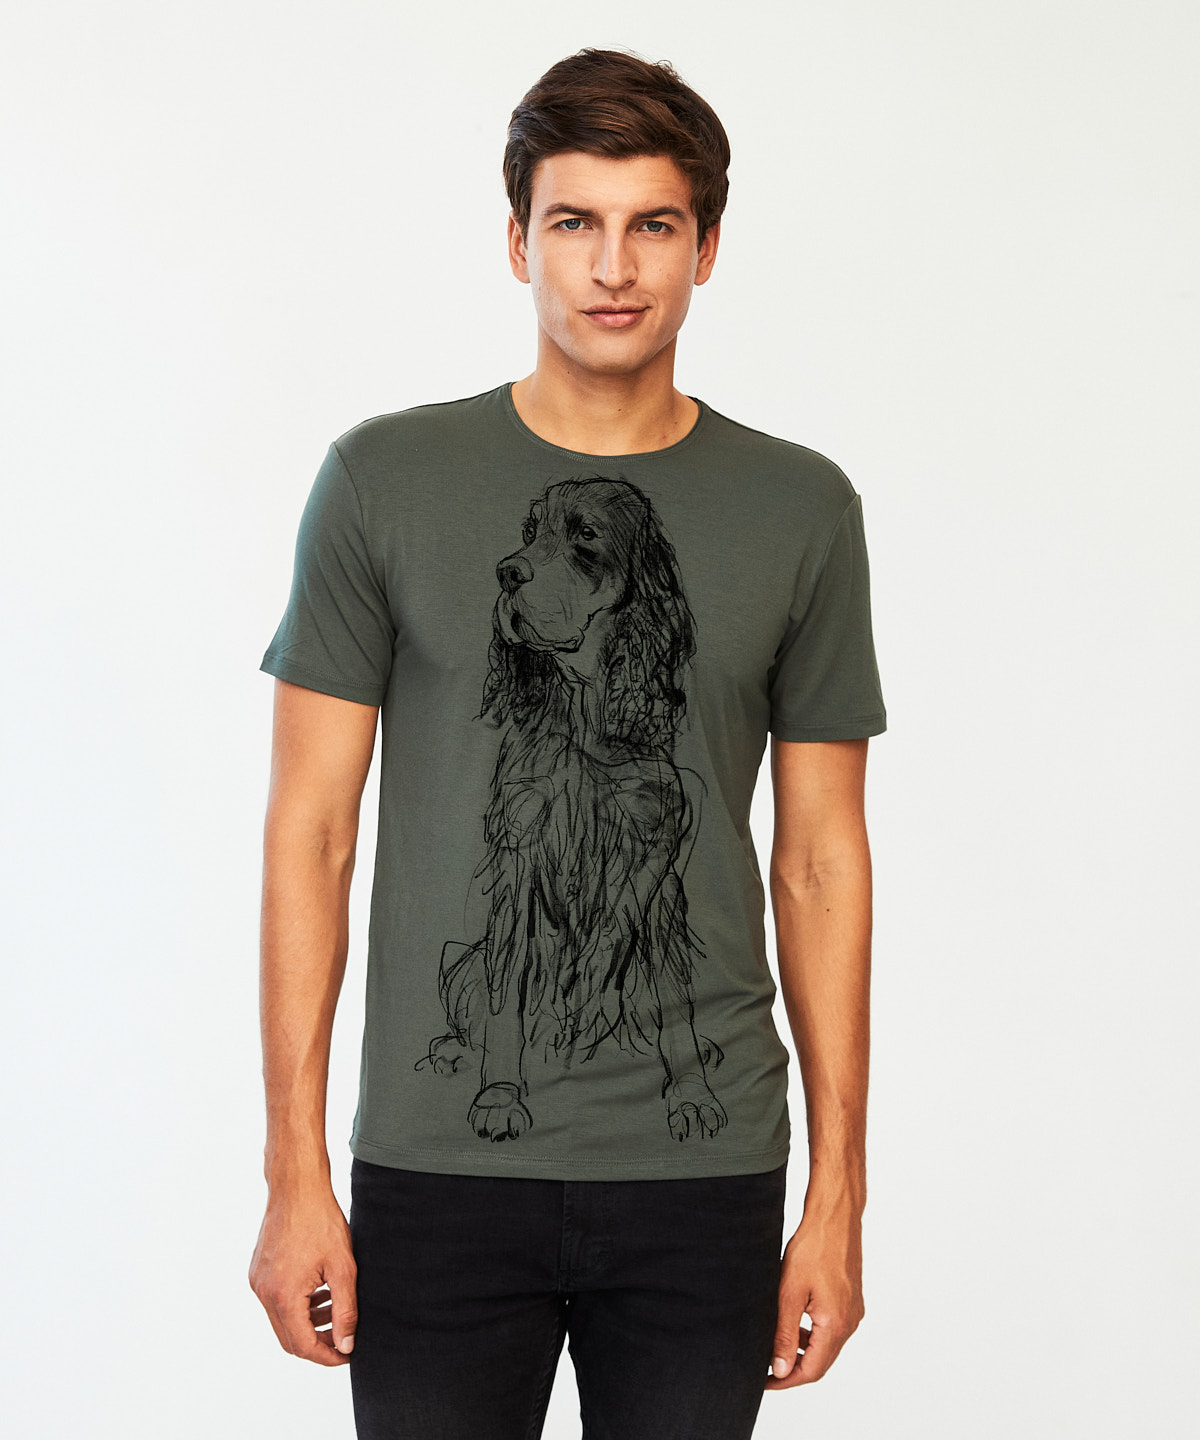 Scottish Setter Dog khaki t-shirt MAN